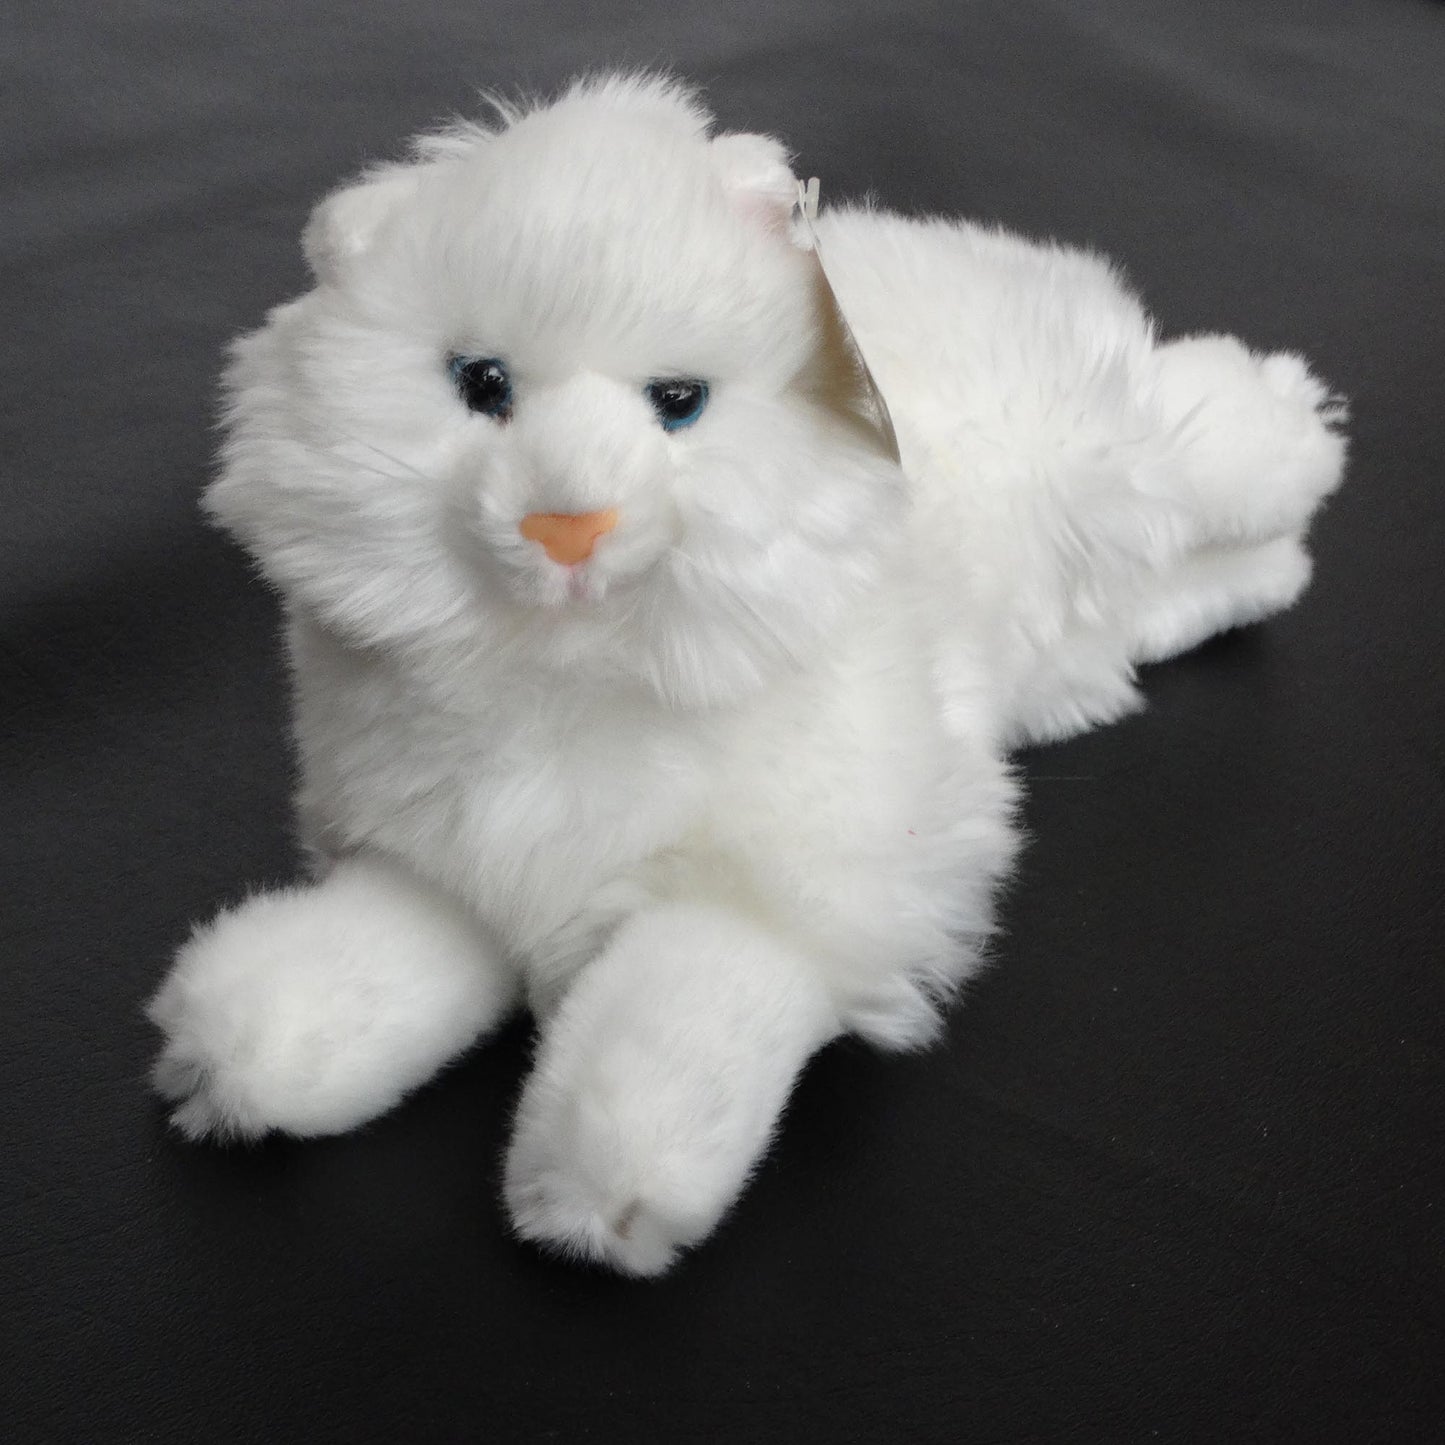 Bear-Toys-White-Plush-Stuffed-Animal-Cat-Kitten_-long-hair.-Shop-eBargainsAndDeals